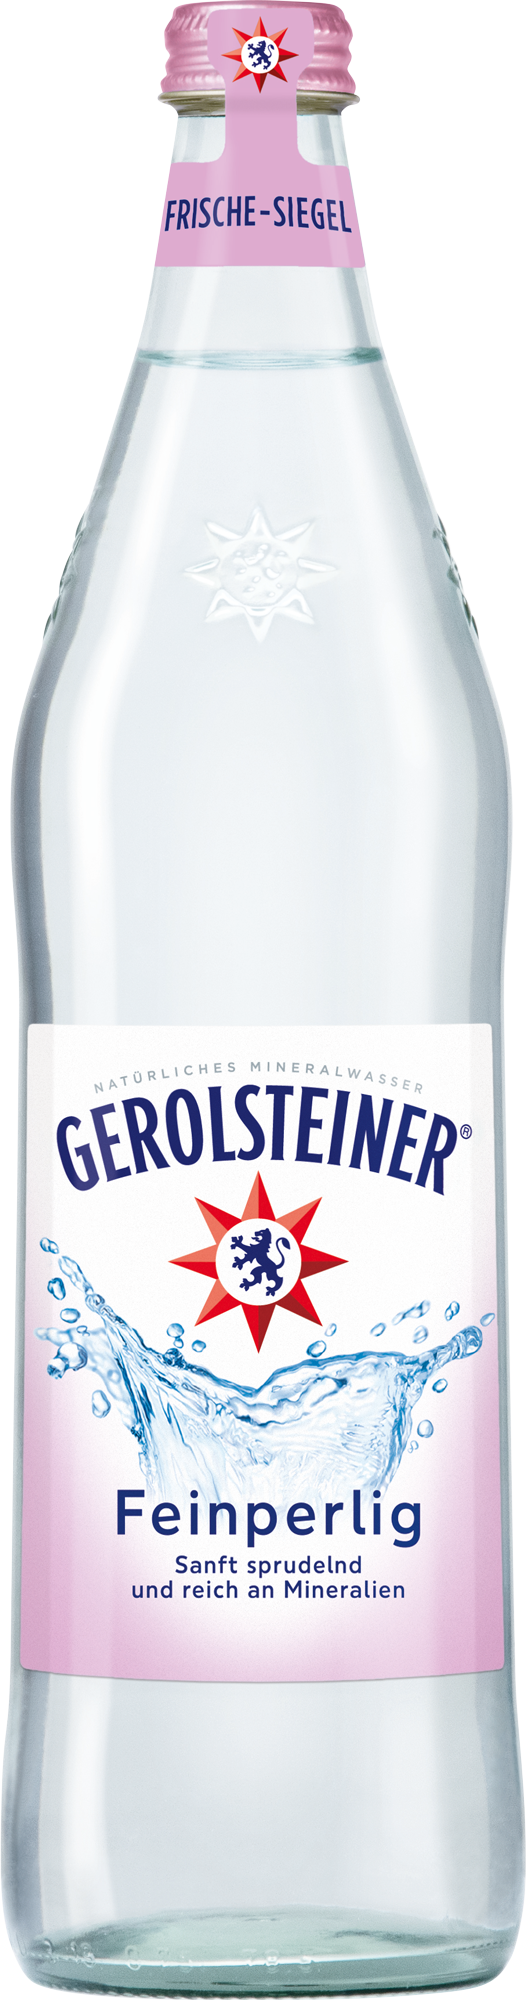 Gerolsteiner Mineralwasser Feinperlig 0,75 l Glas Mehrweg - Ihr ...